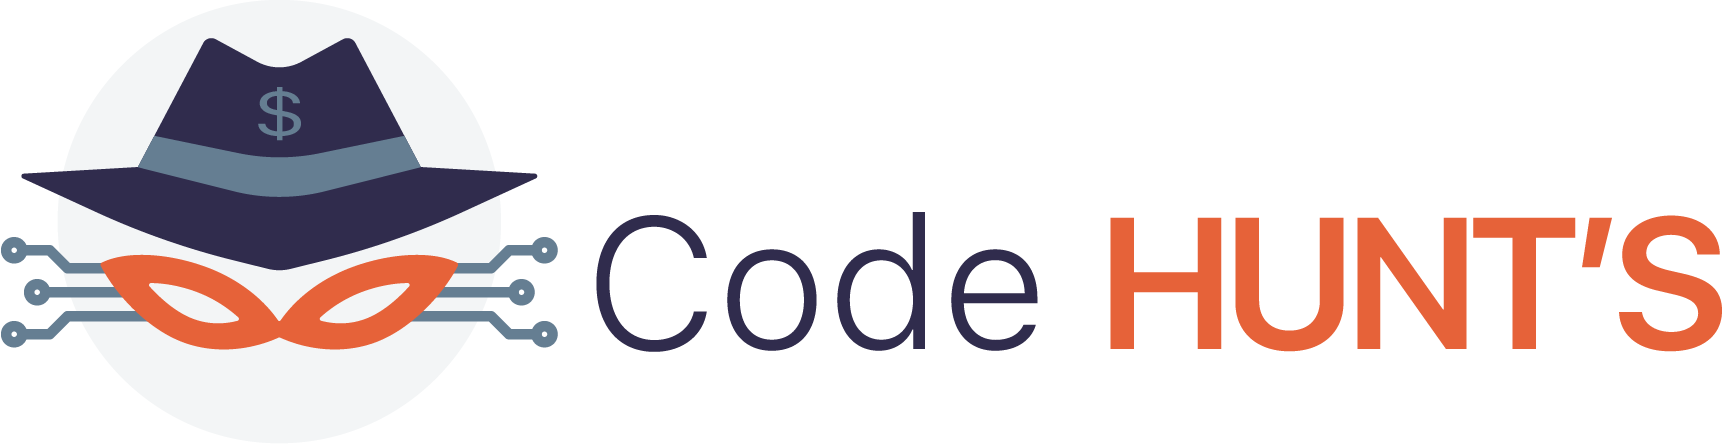 code hunts logo